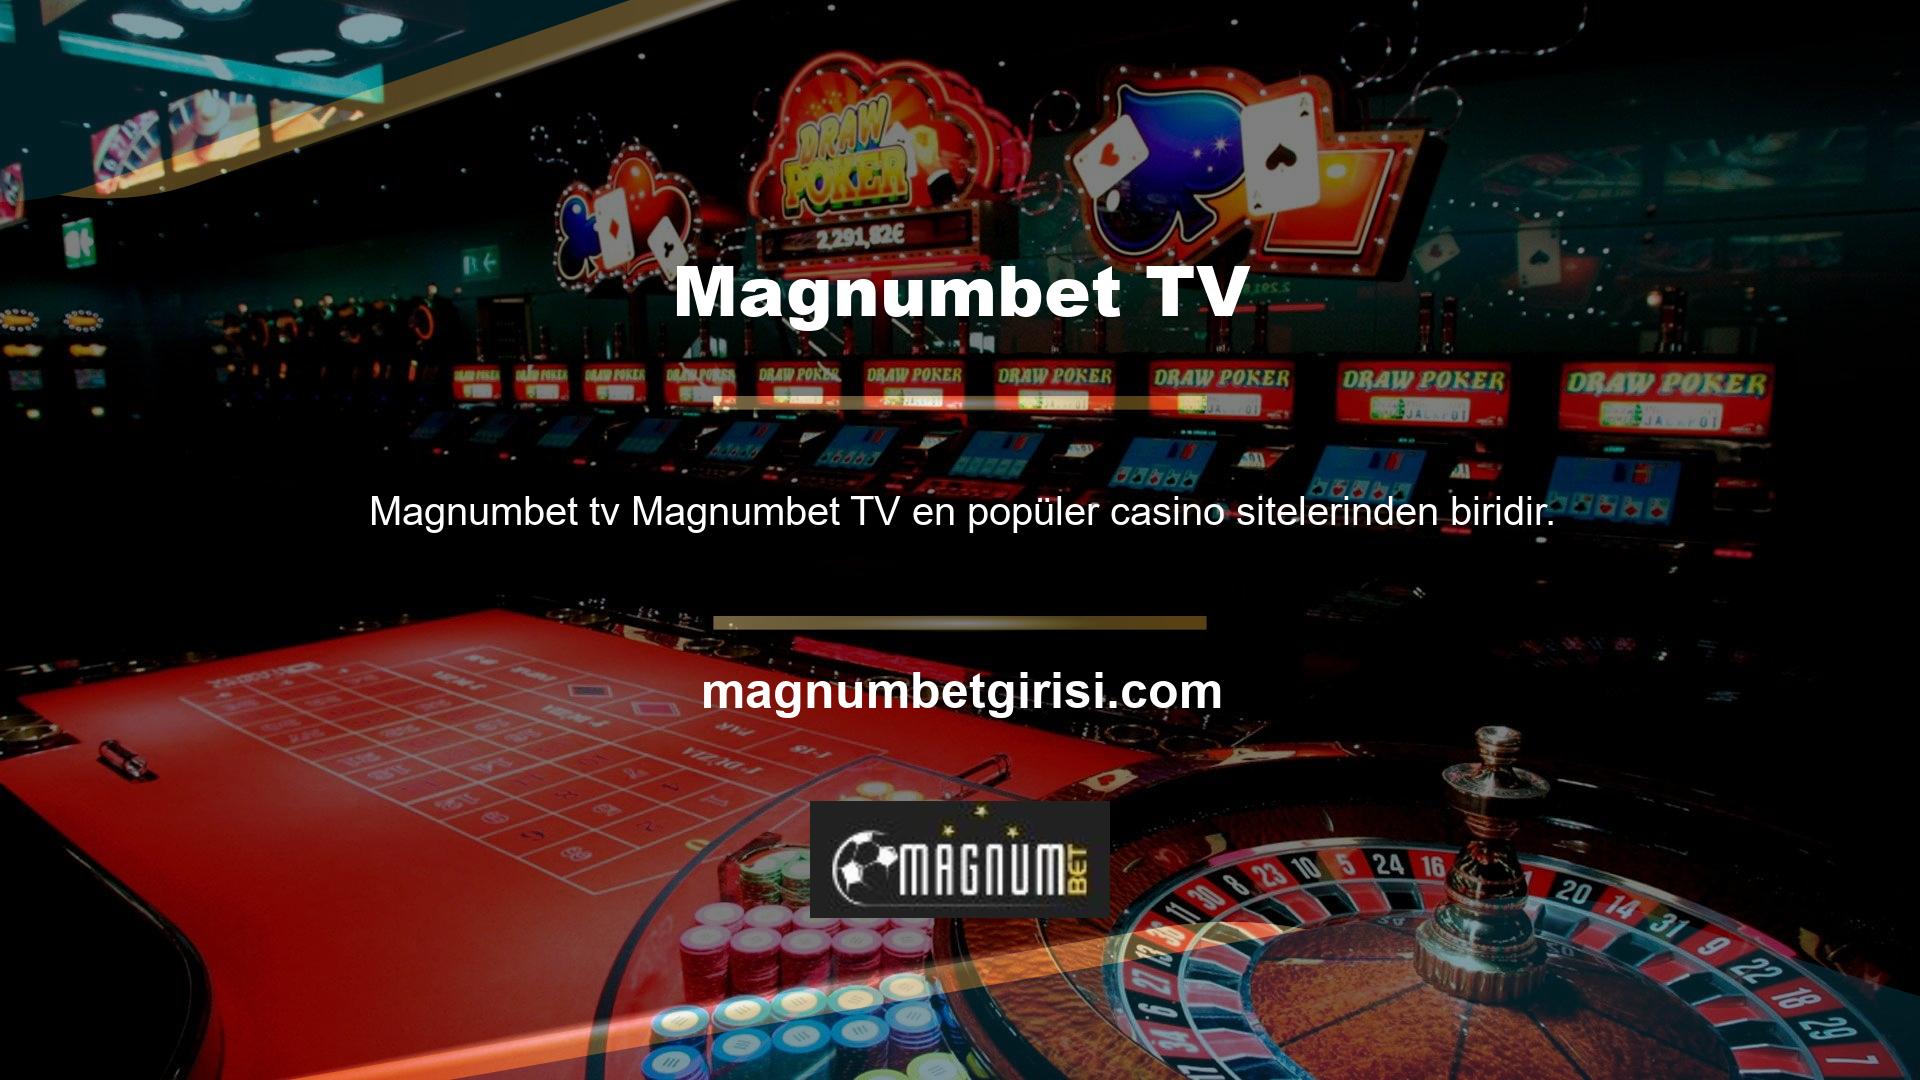 Magnumbet TV, çevrimiçi casino, bahis ve canlı bahis kategorileri dahil olmak üzere sanal ve canlı casino bahisleri sunan hizmetlerini başlattı